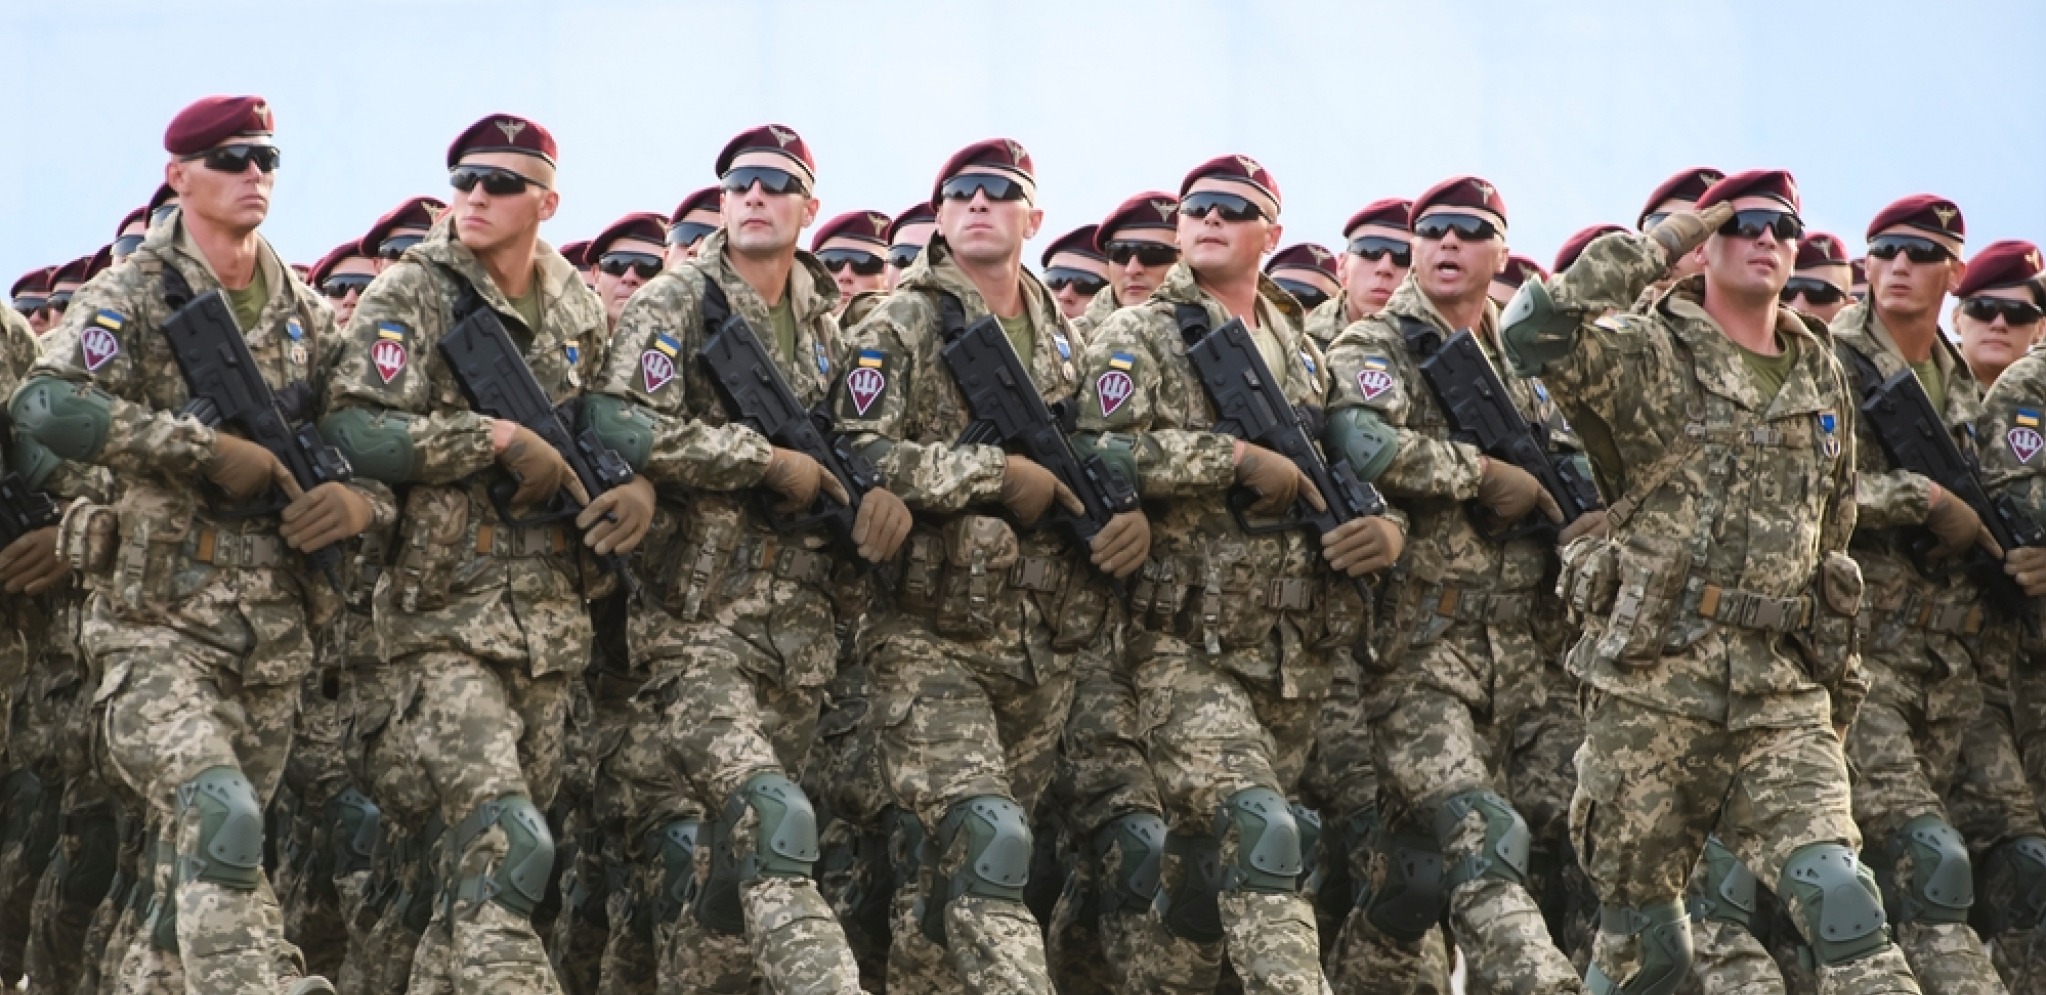 ZVANIČNO POTVRĐENO Velika Britanija obučava 10.000 ukrajinskih vojnika